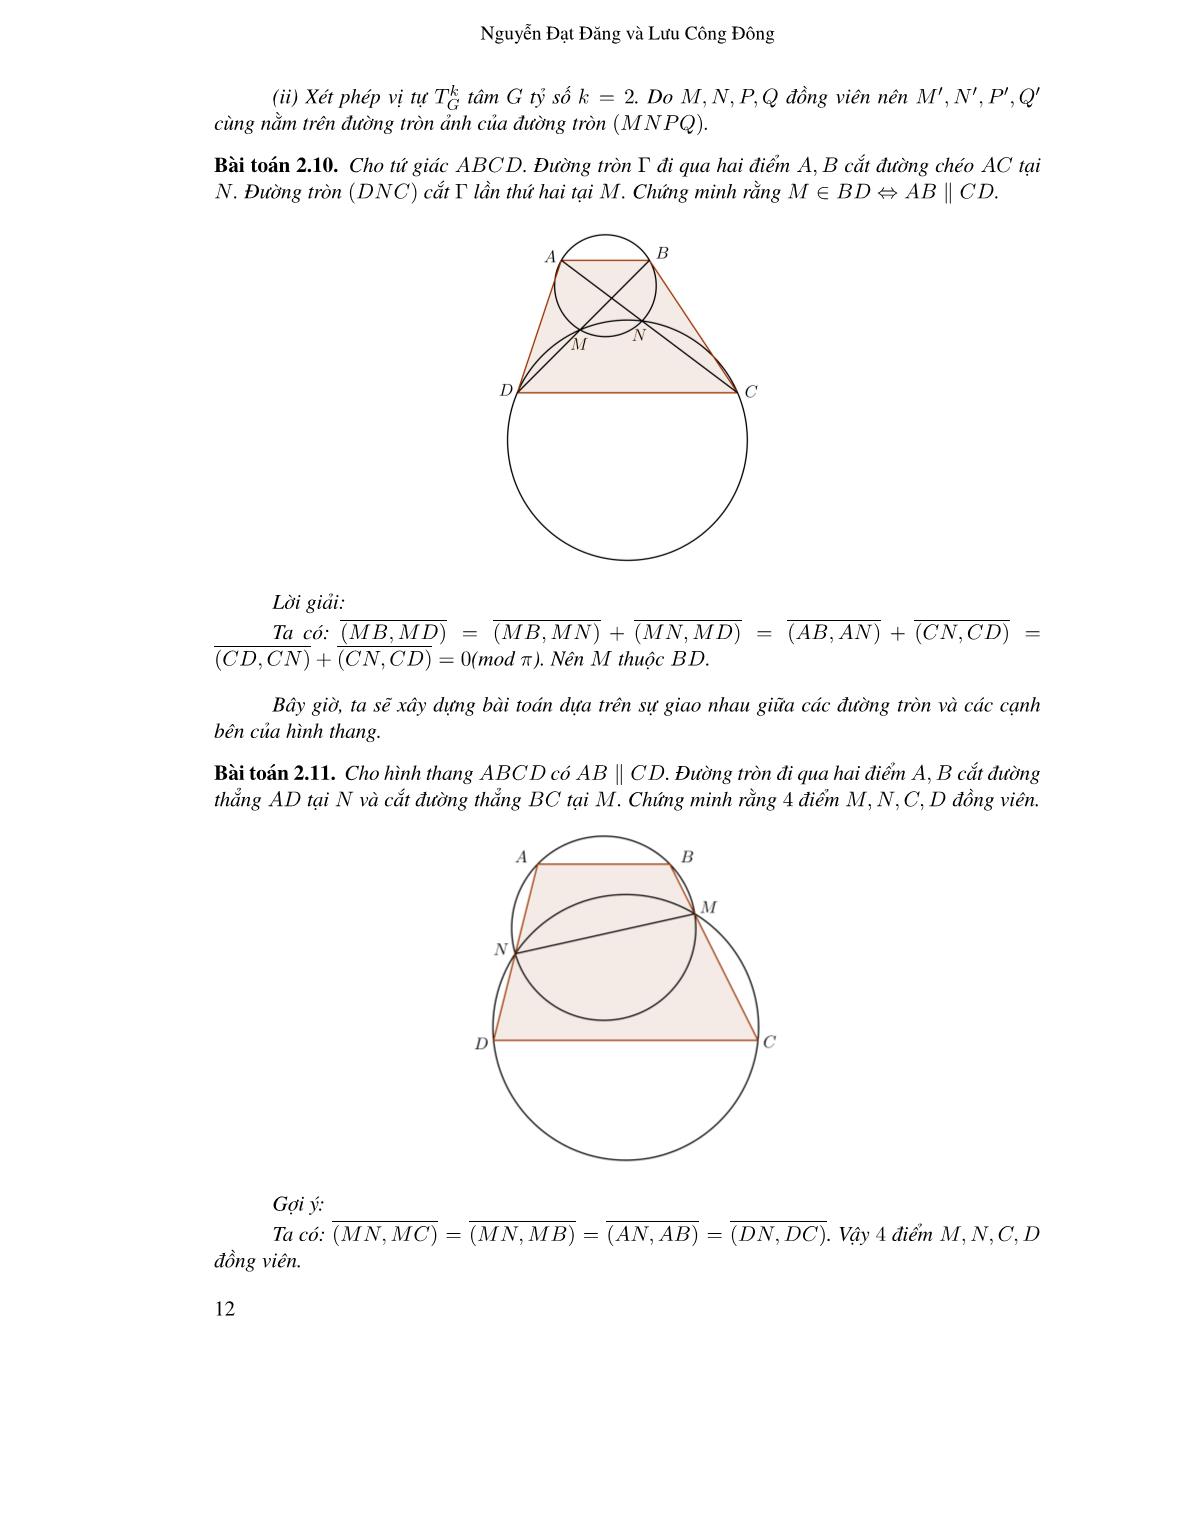 Ứng dụng góc định hướng vào một số bài toán hình học phẳng trang 10